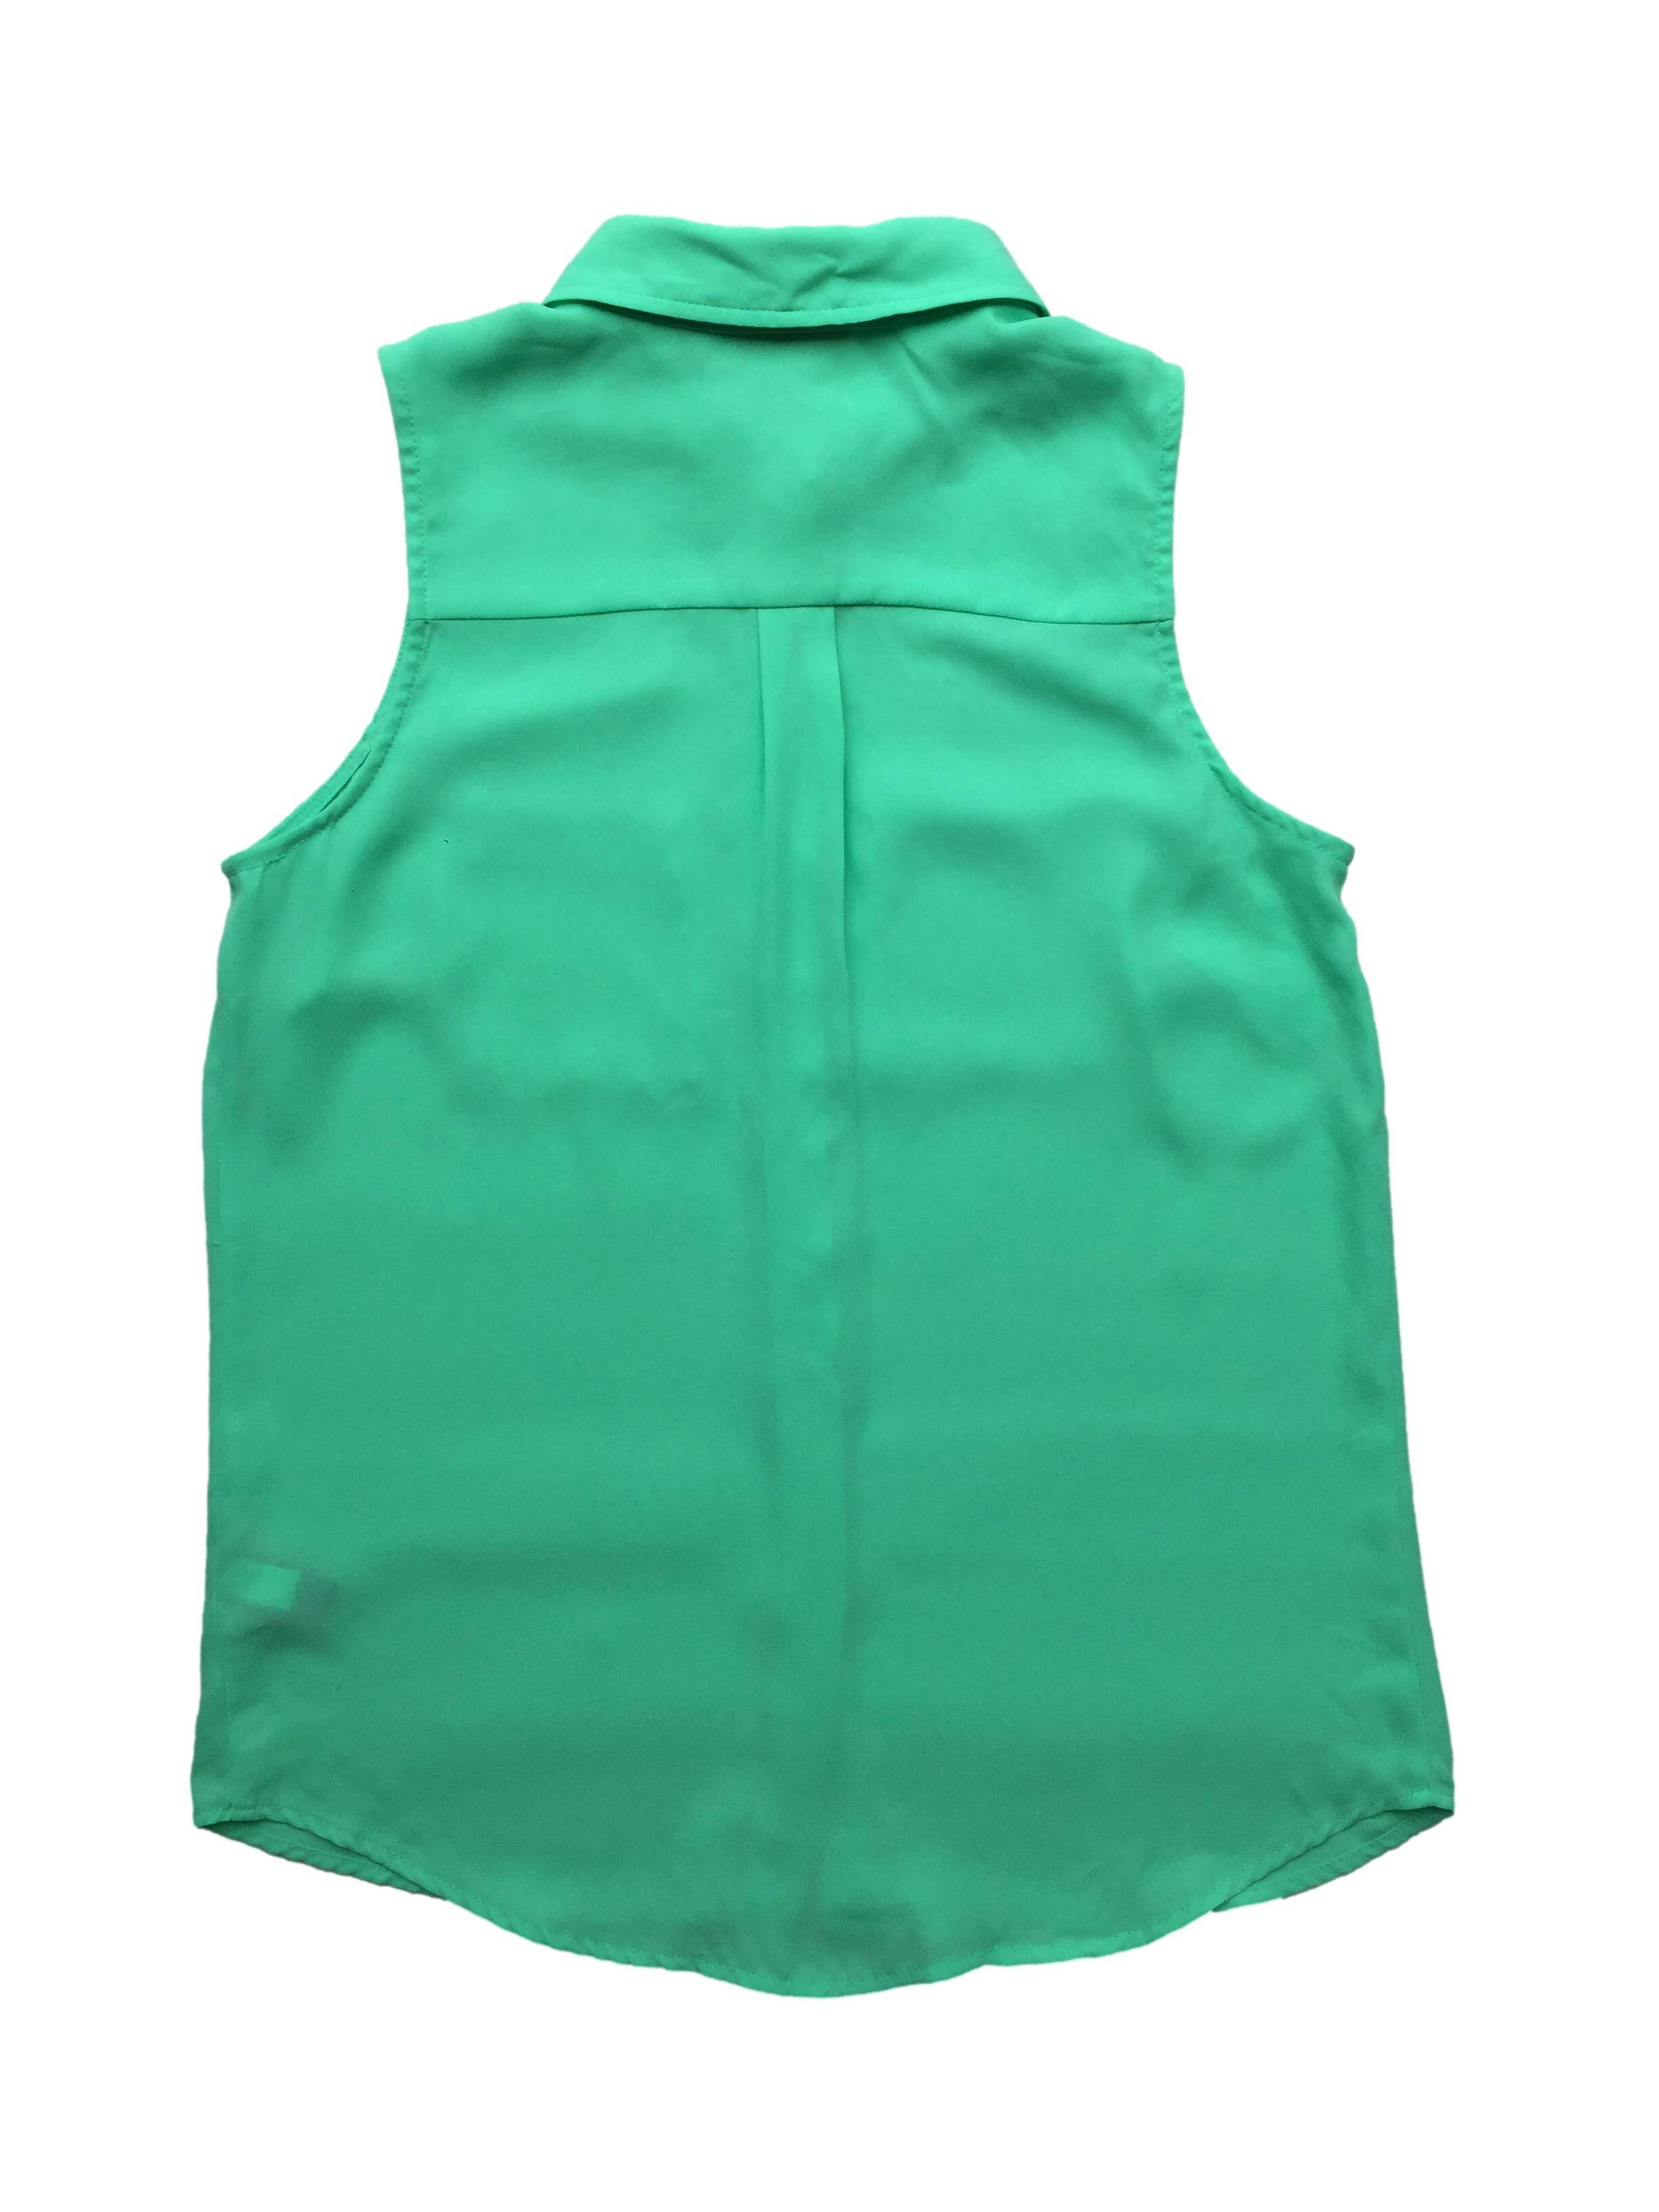 Blusa de gasa verde con bolsillos frontales y botones de repuesto. Busto 100cm, Largo 60cm.